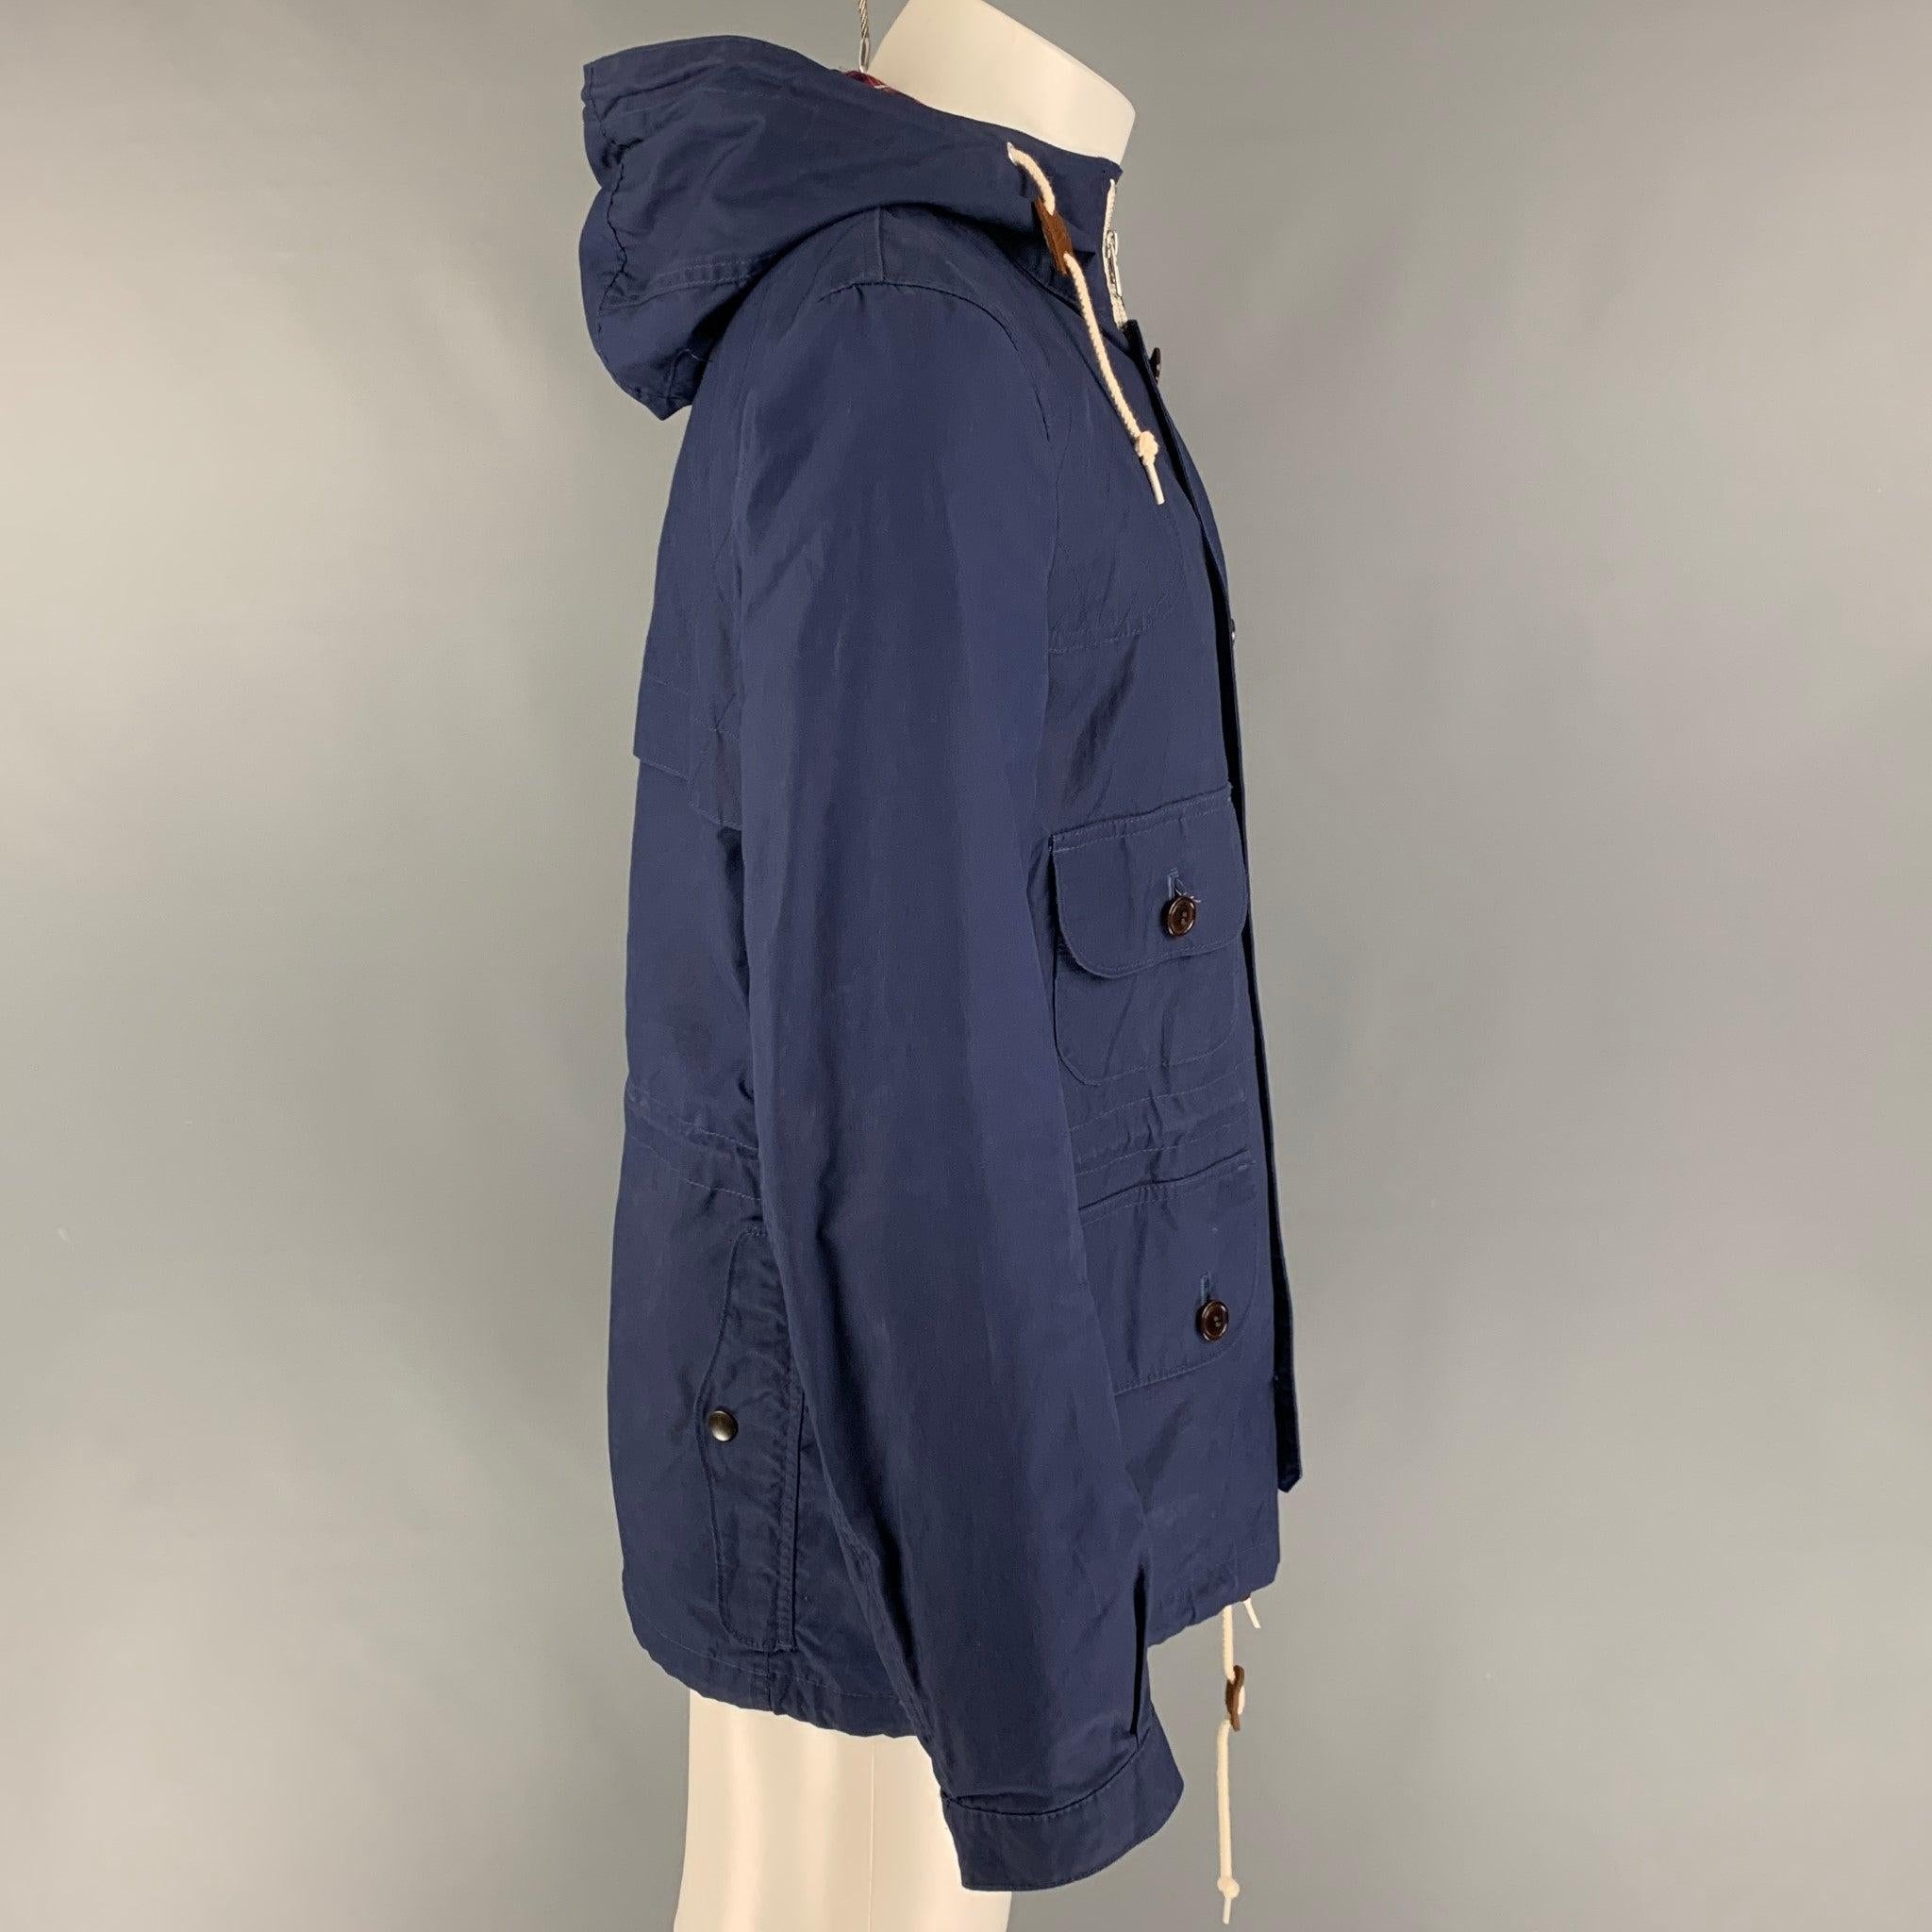 Die Jacke von JUNYA WATANABE aus beschichtetem Segeltuch in Marineblau mit kariertem Besatz hat einen maritimen Stil, braune Cordbesätze, aufgesetzte Taschen, Kordelzug, Kapuze, Steppnähte und einen Reißverschluss mit Knöpfen. Hergestellt in